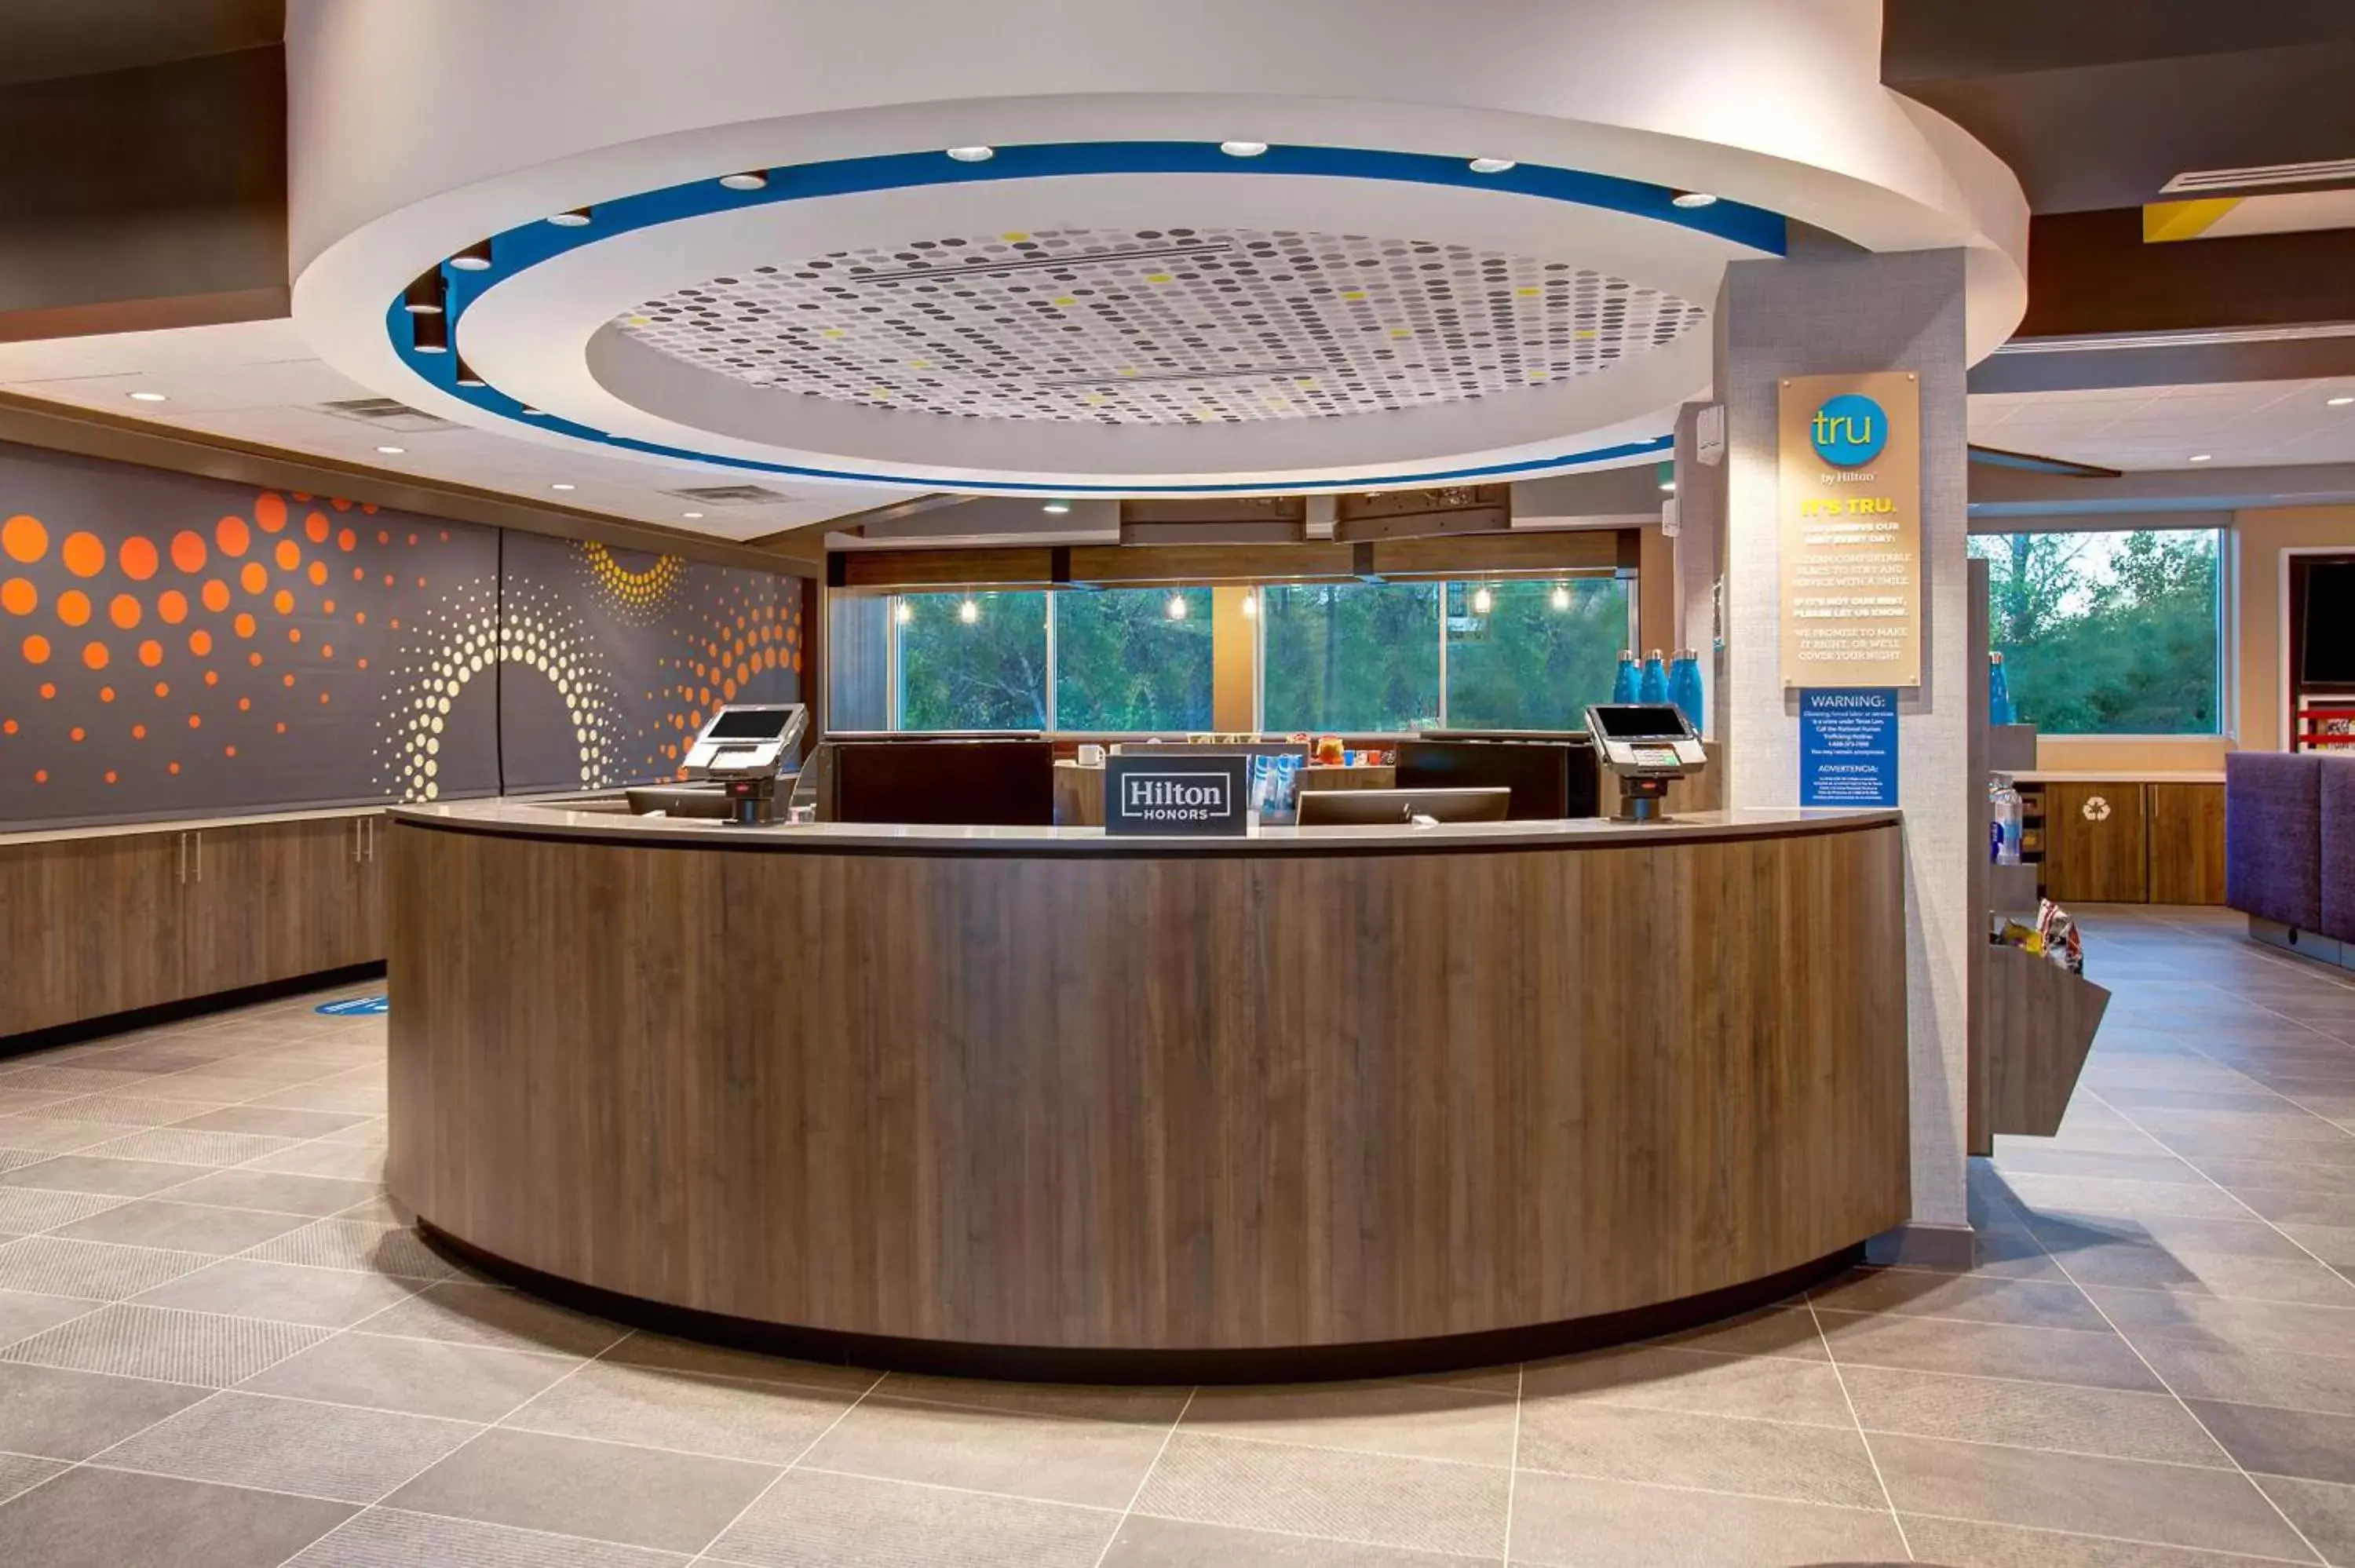 Lobby or reception, Lobby/Reception in Tru By Hilton Northlake Fort Worth, Tx